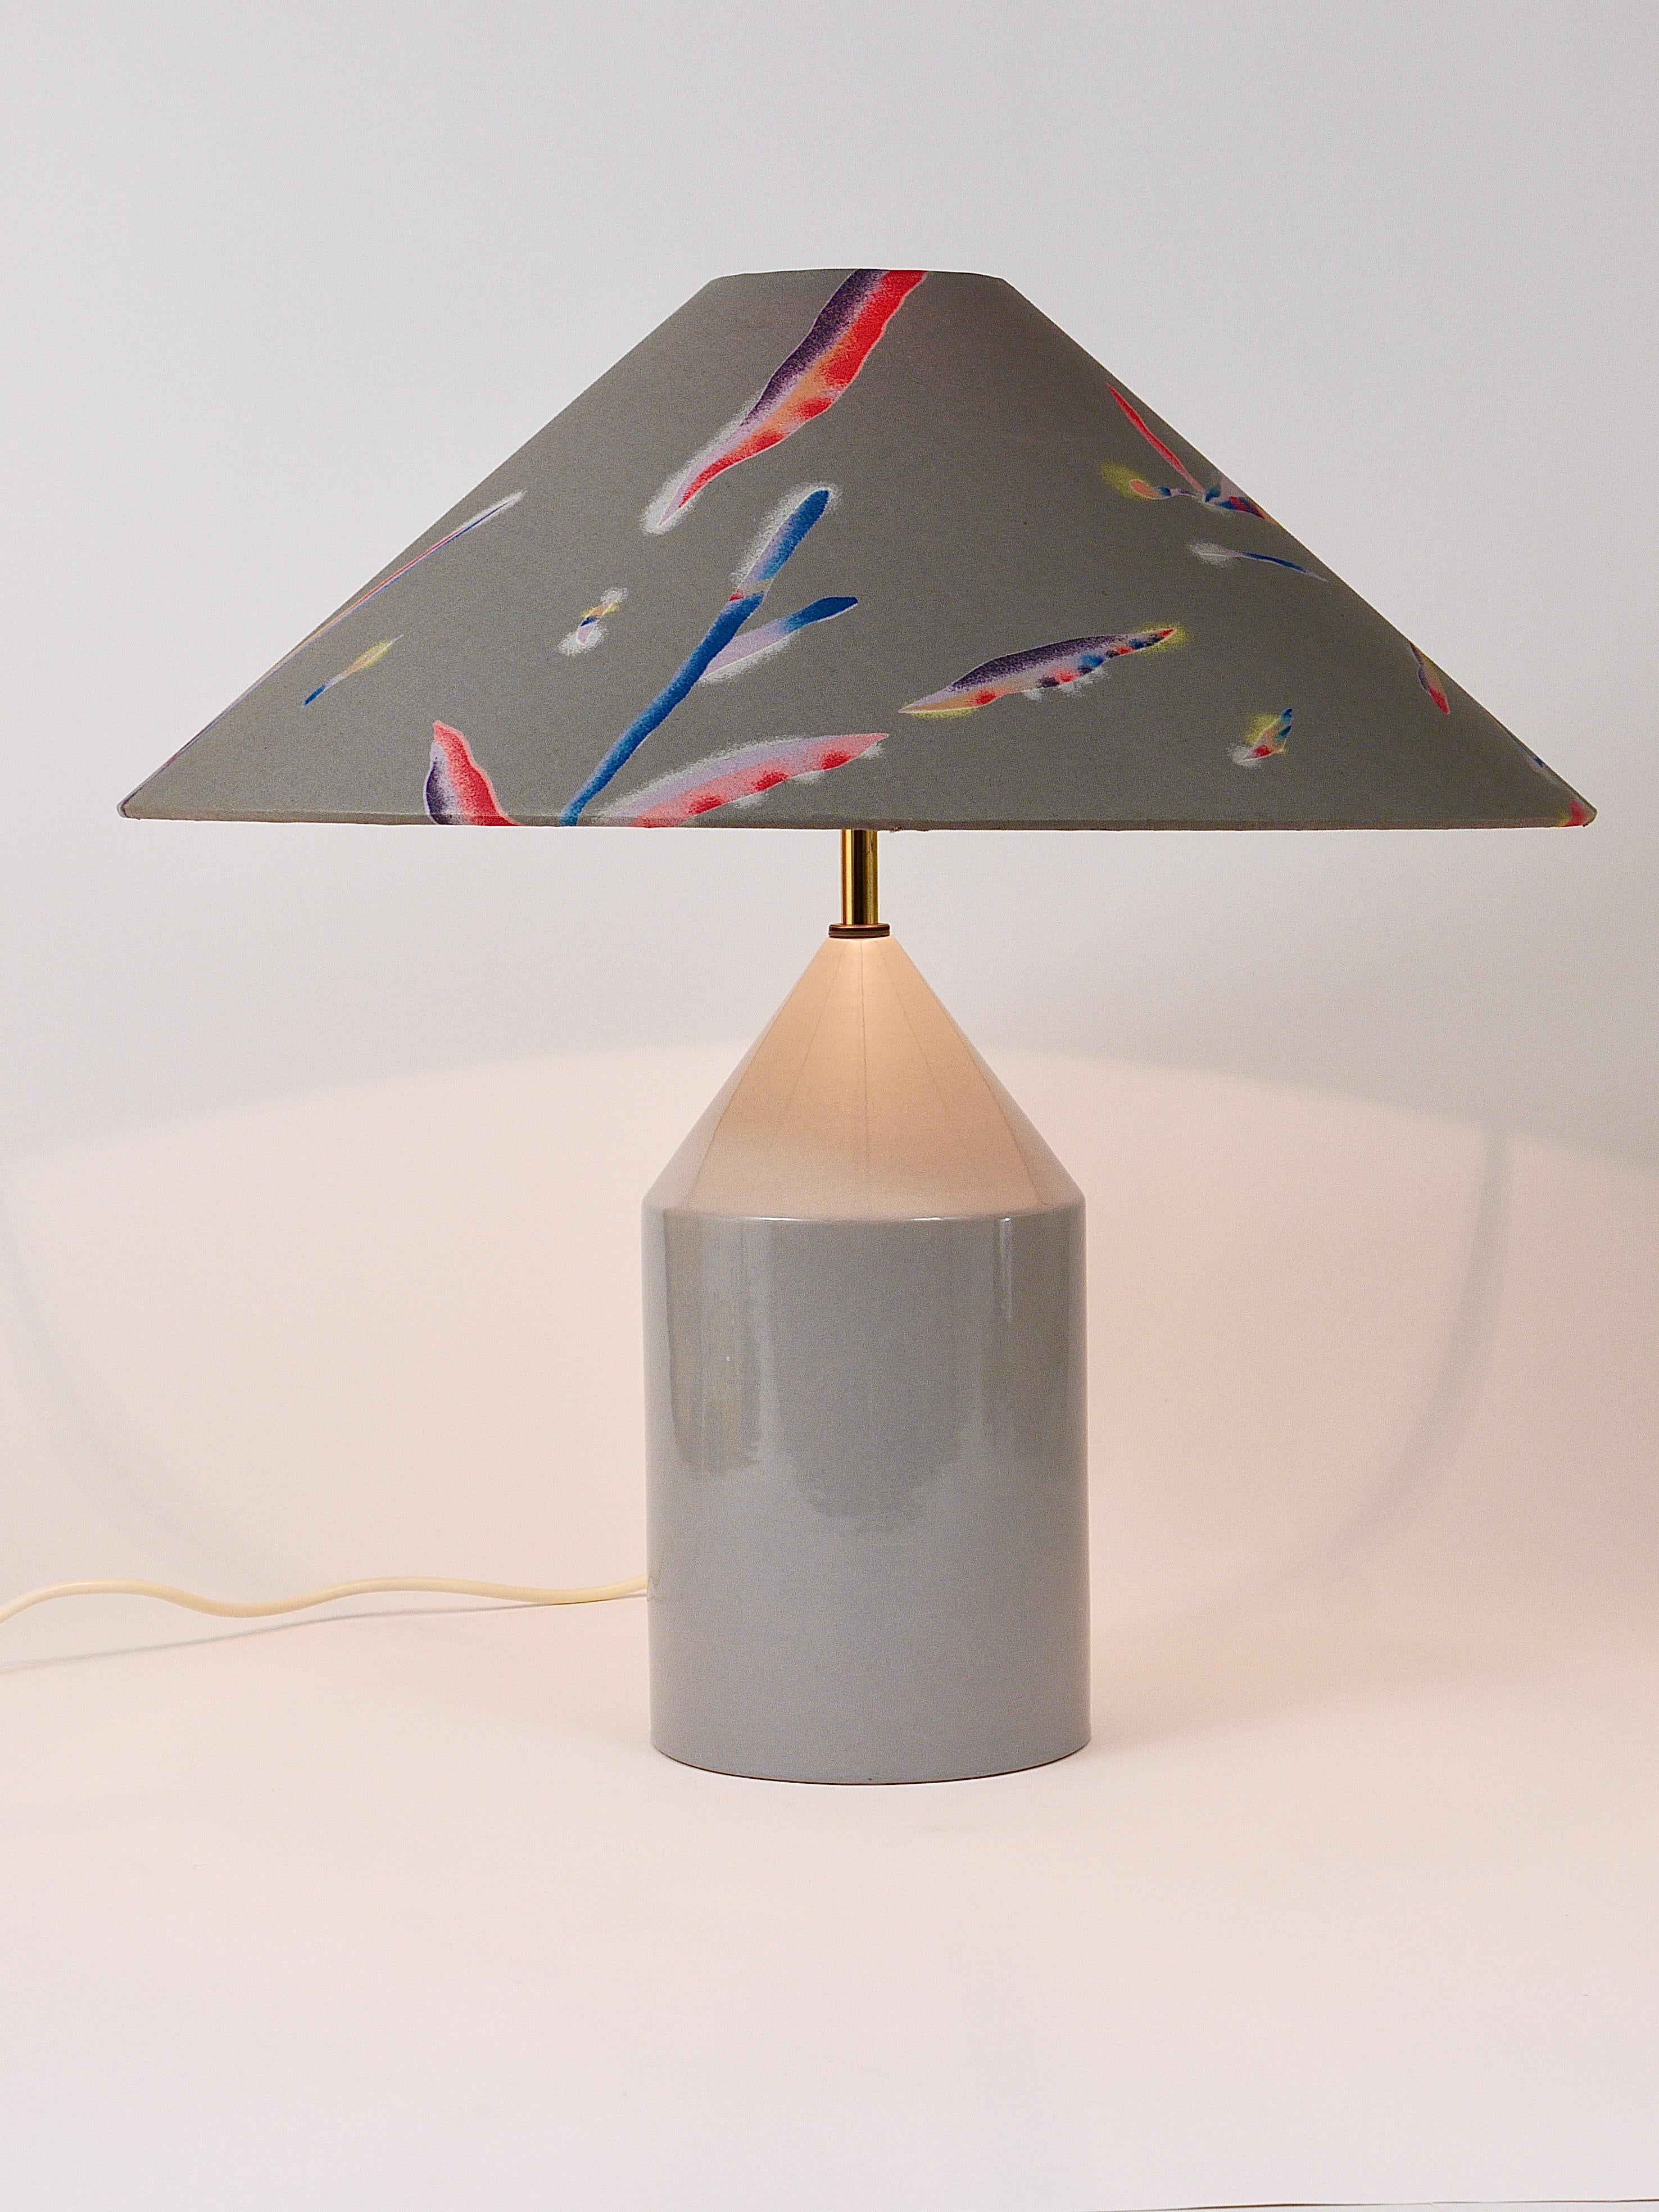 Une belle lampe de table / lampe d'appoint postmoderne italienne des années 1980. La base de la lampe est en céramique avec une glaçure brillante gris clair. Elle a toujours son abat-jour conique d'origine avec un étonnant motif floral et coloré des